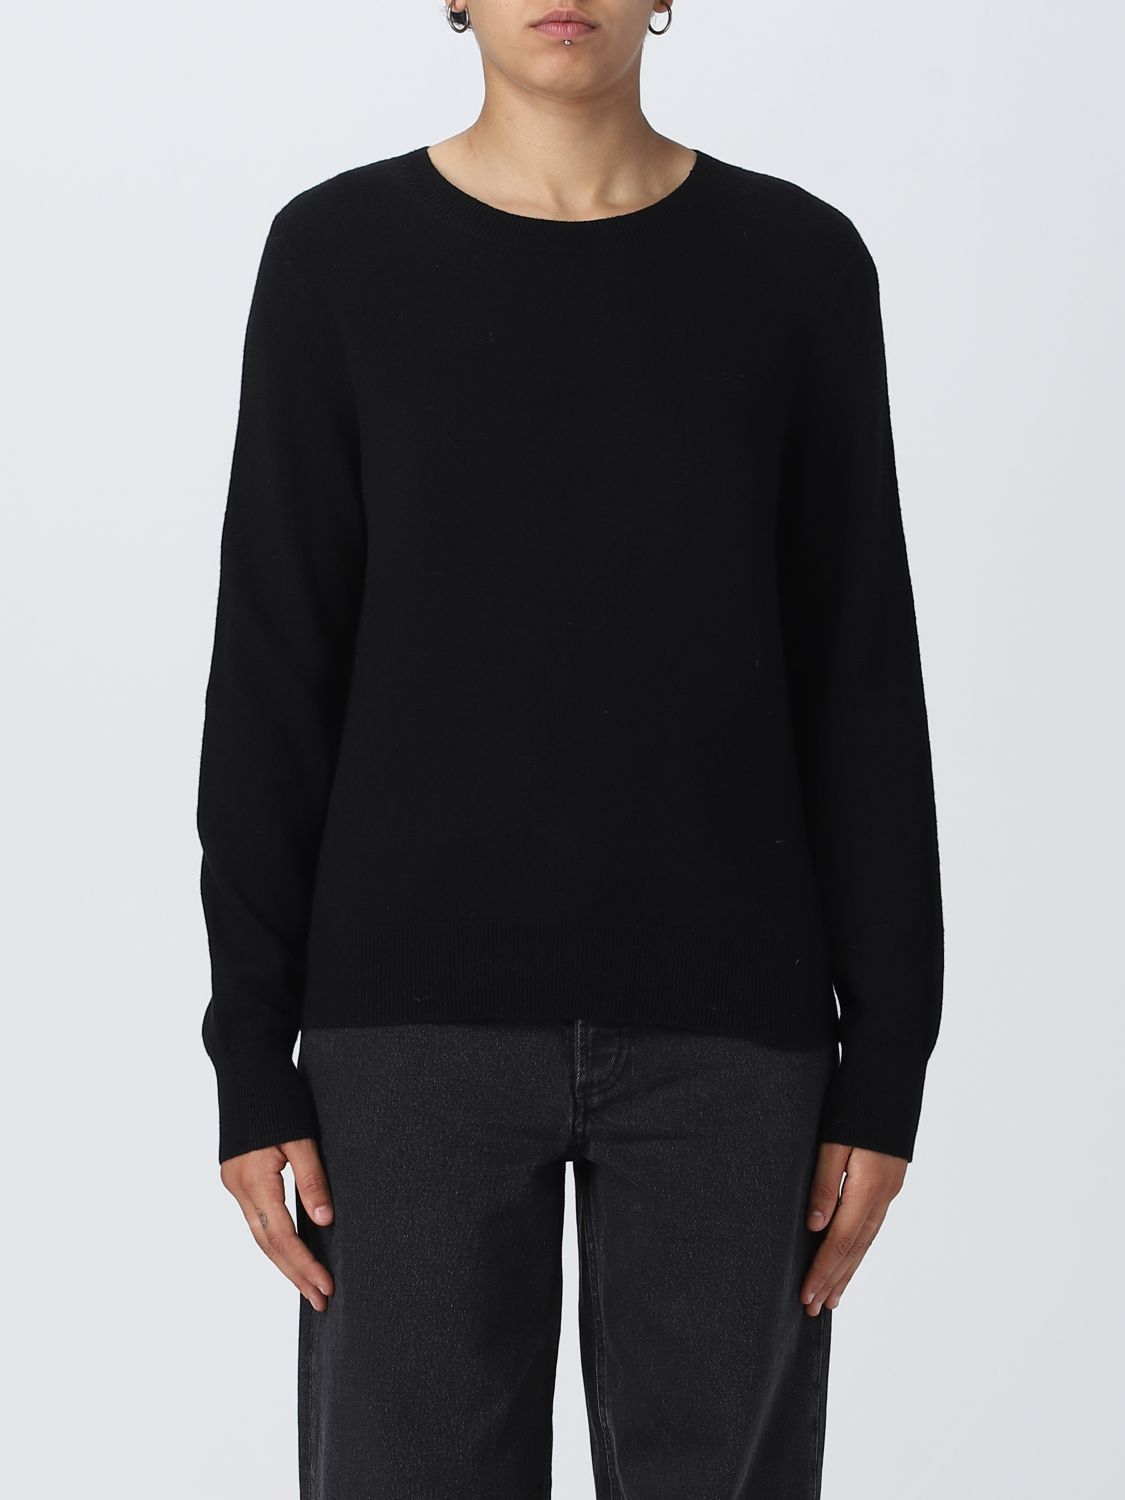 Apc Sweater A.p.c. Woman Color Black